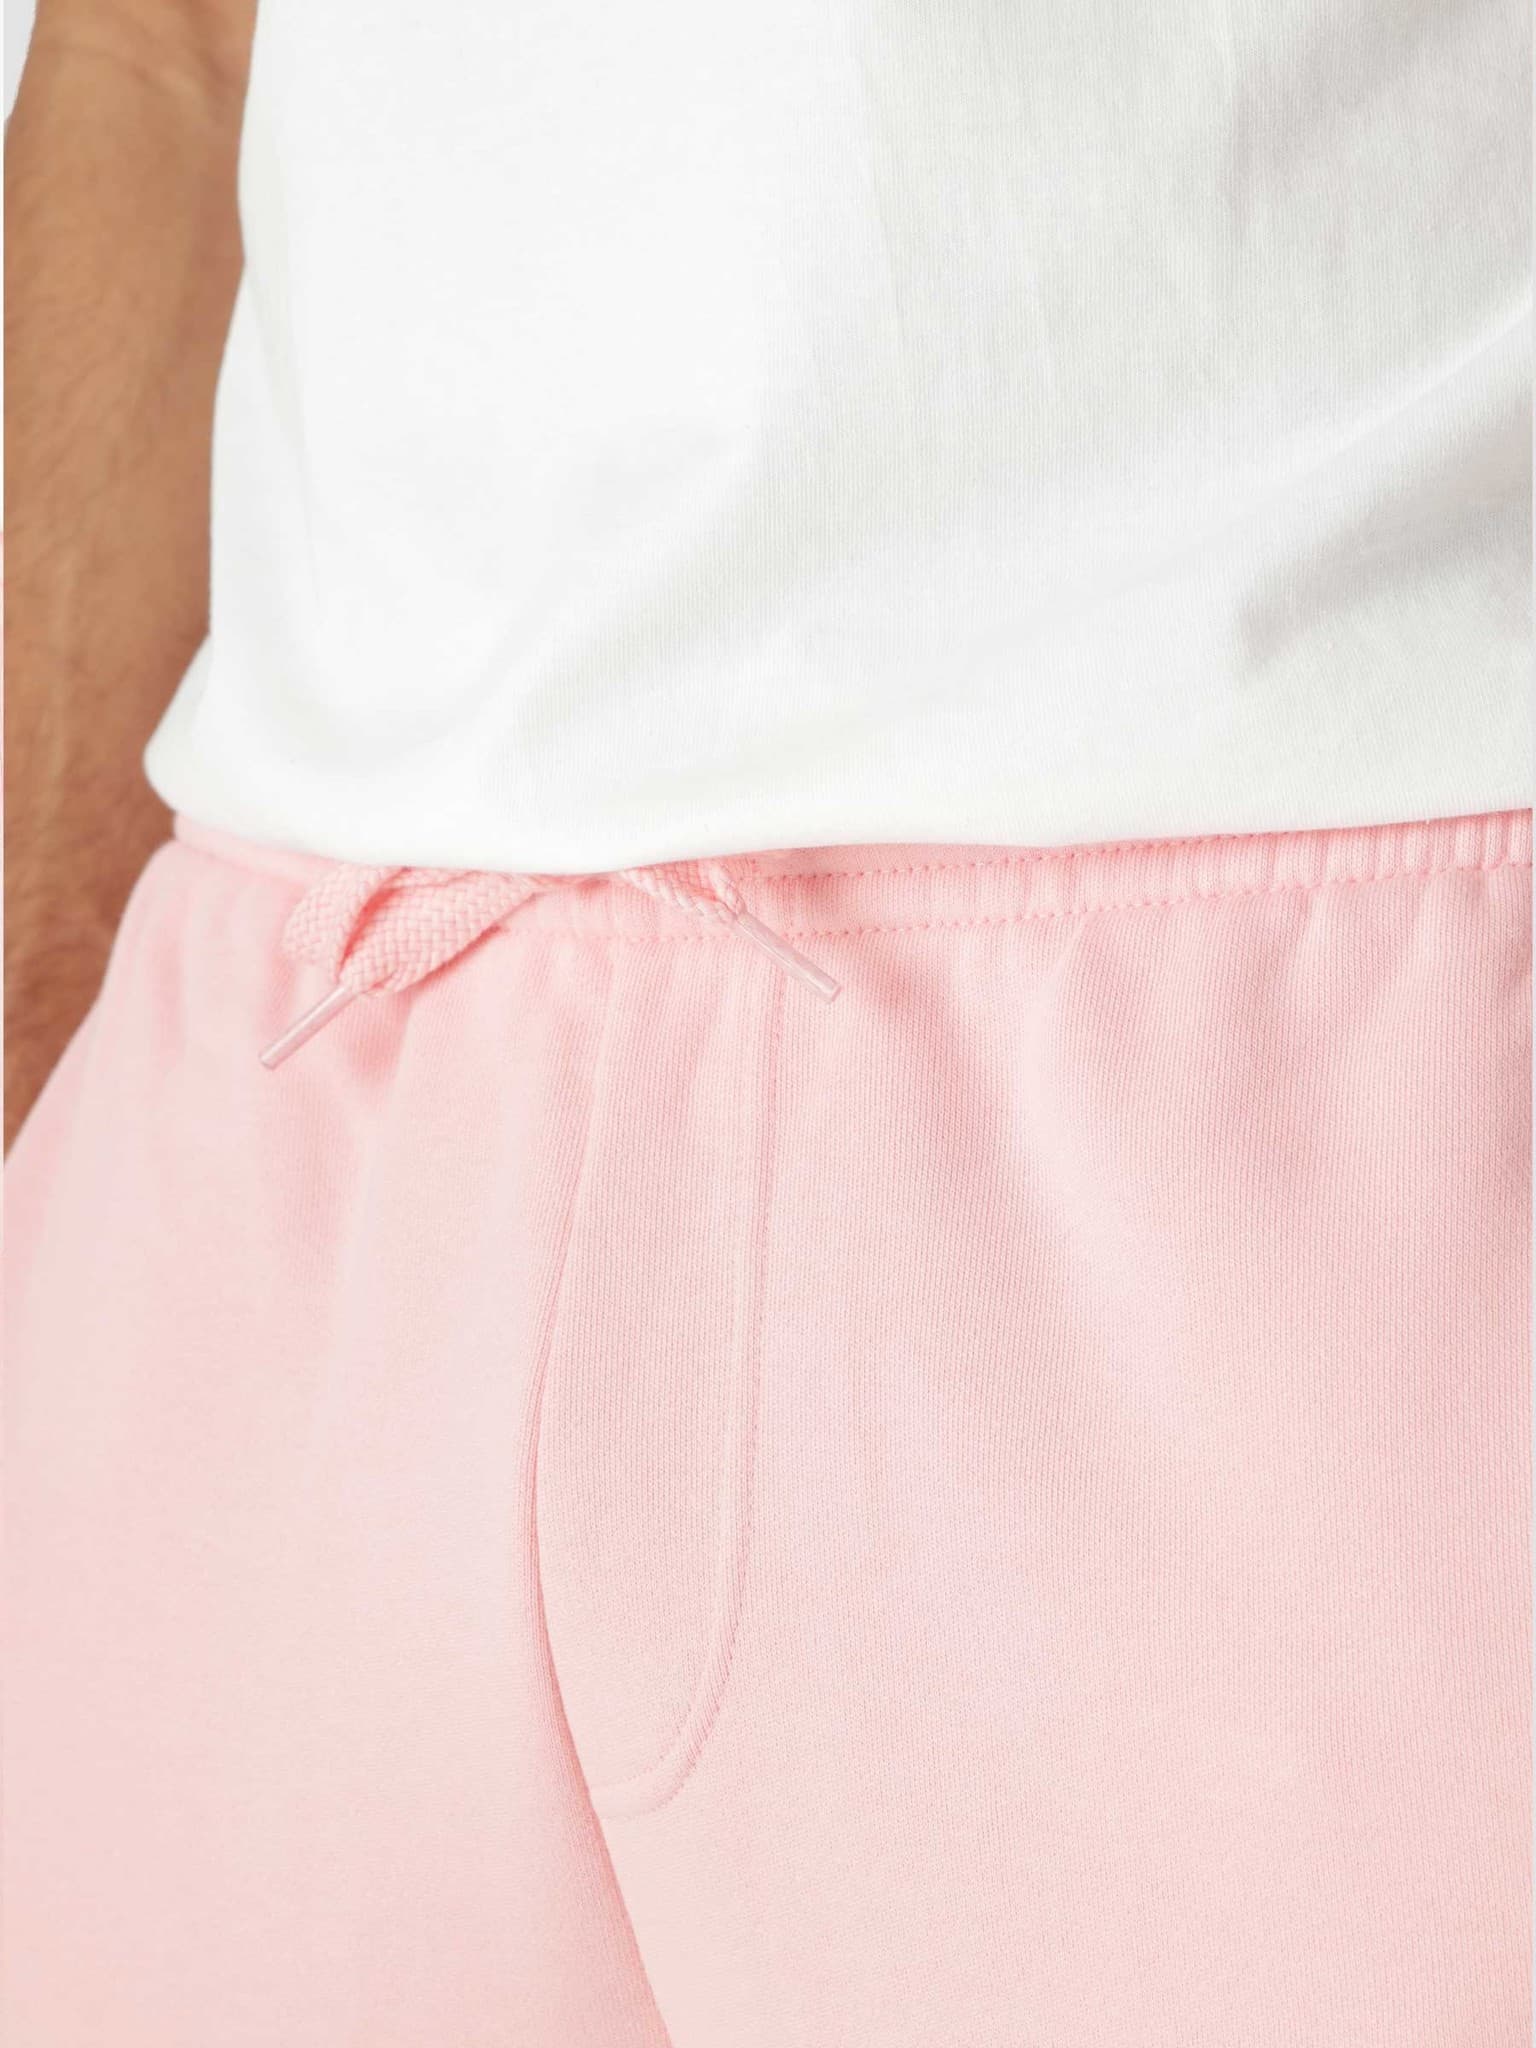 1HG1 Men's Shorts 01 Bagatelle Pink GH2136-11